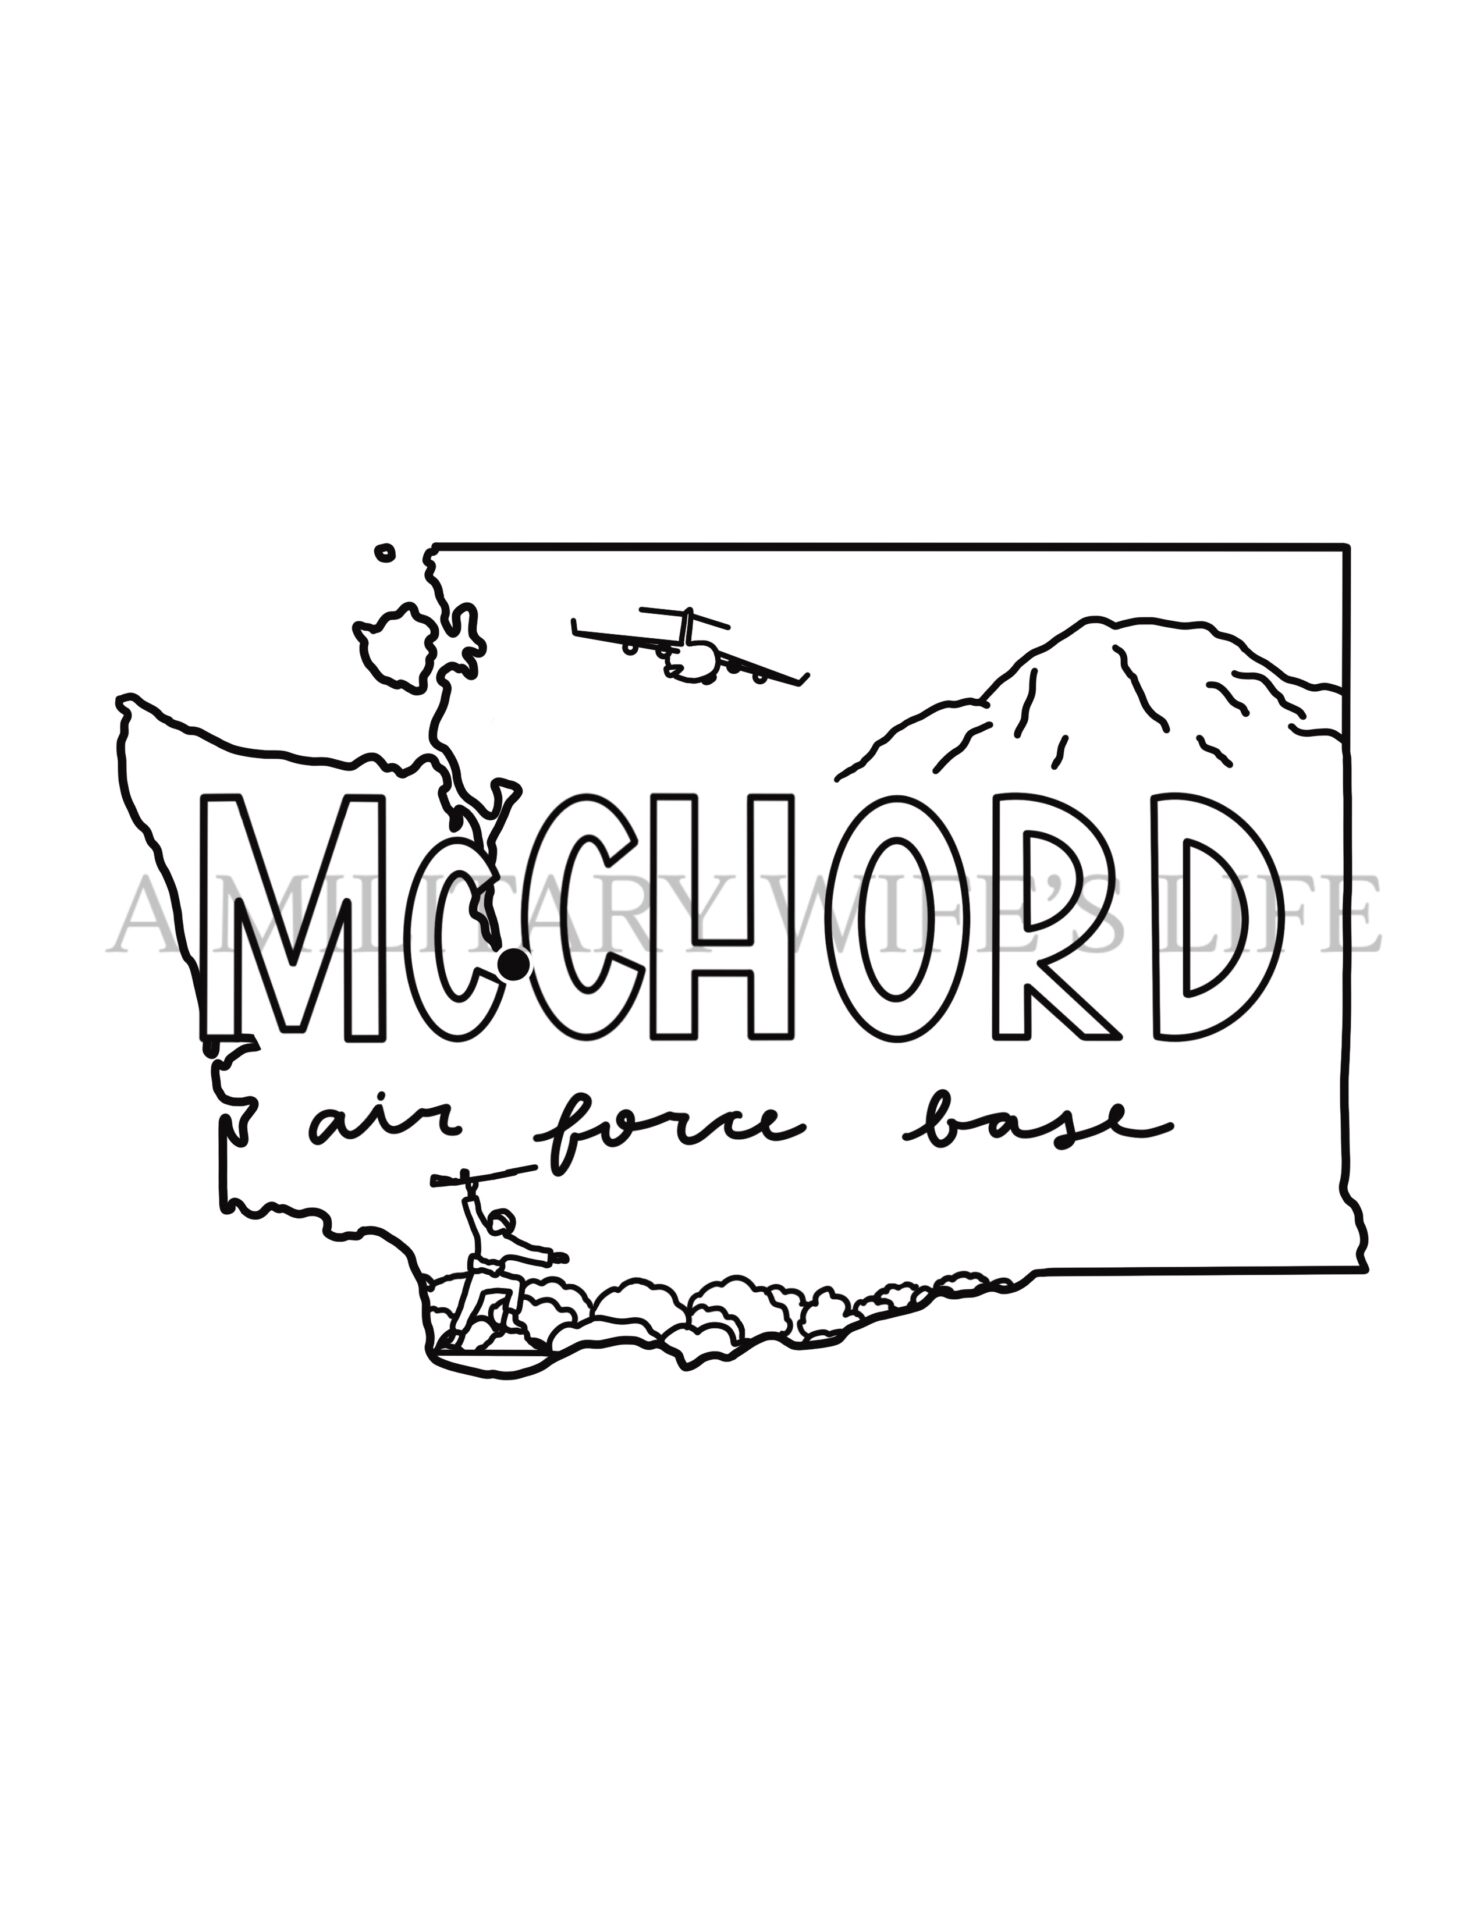 McChord-AFB